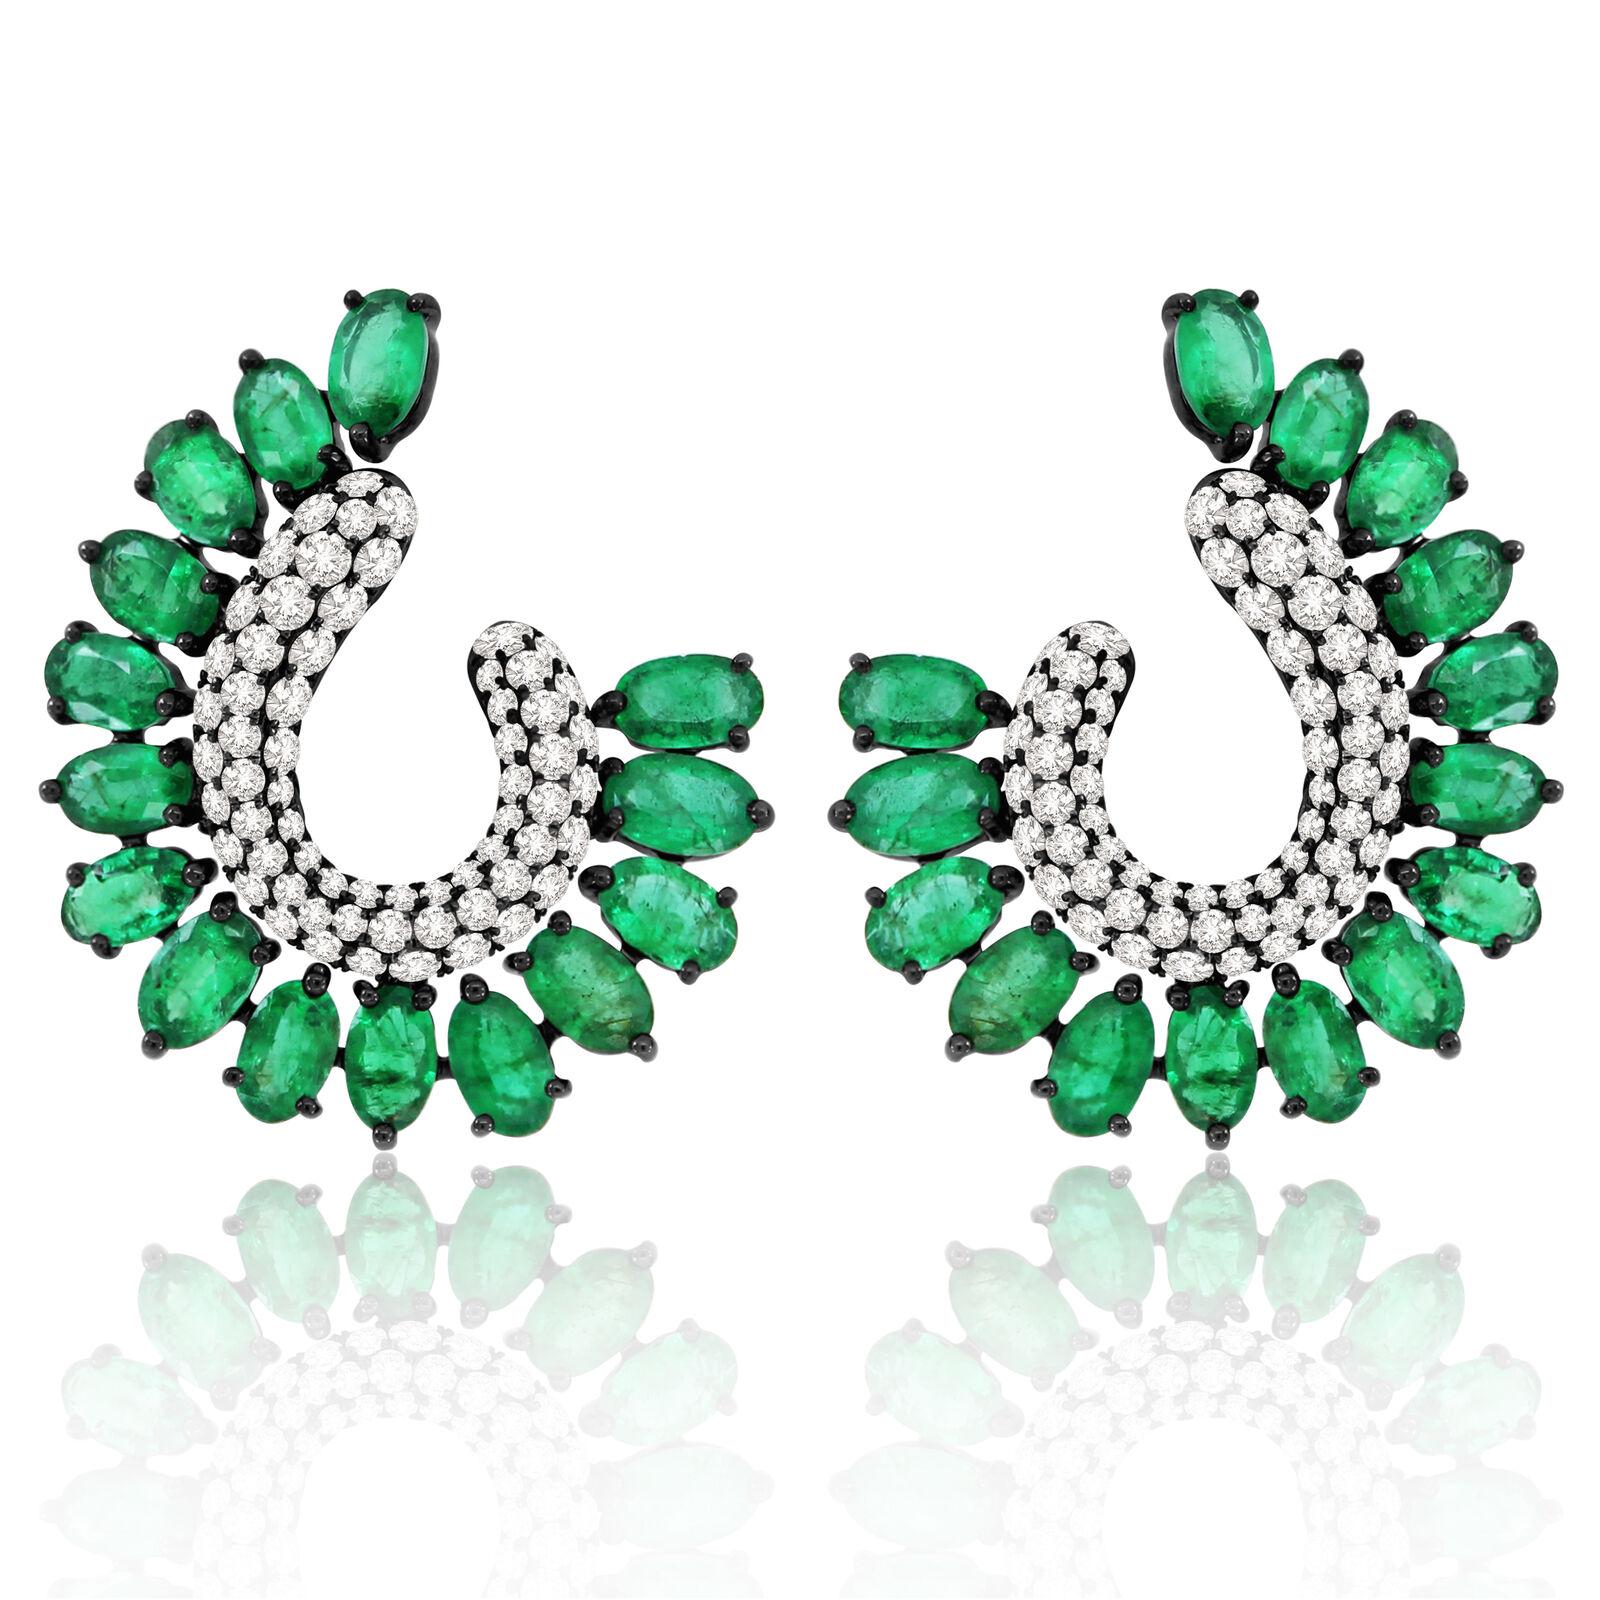 Mixed Cut 4.45 Carat Emerald Diamond 18 Karat Gold Earrings